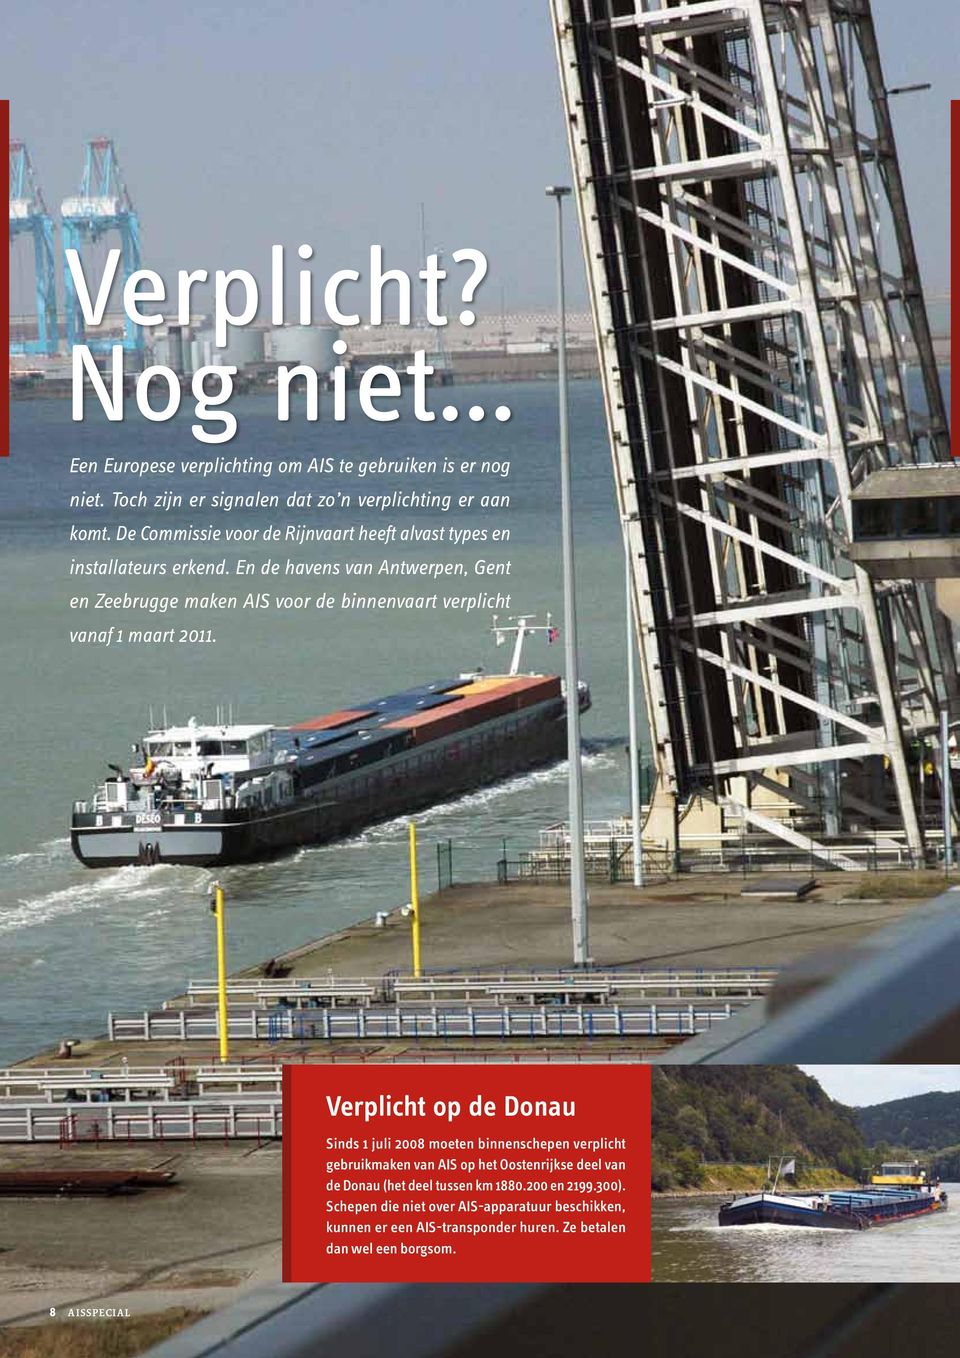 En de havens van Antwerpen, Gent en Zeebrugge maken AIS voor de binnenvaart verplicht vanaf 1 maart 2011.